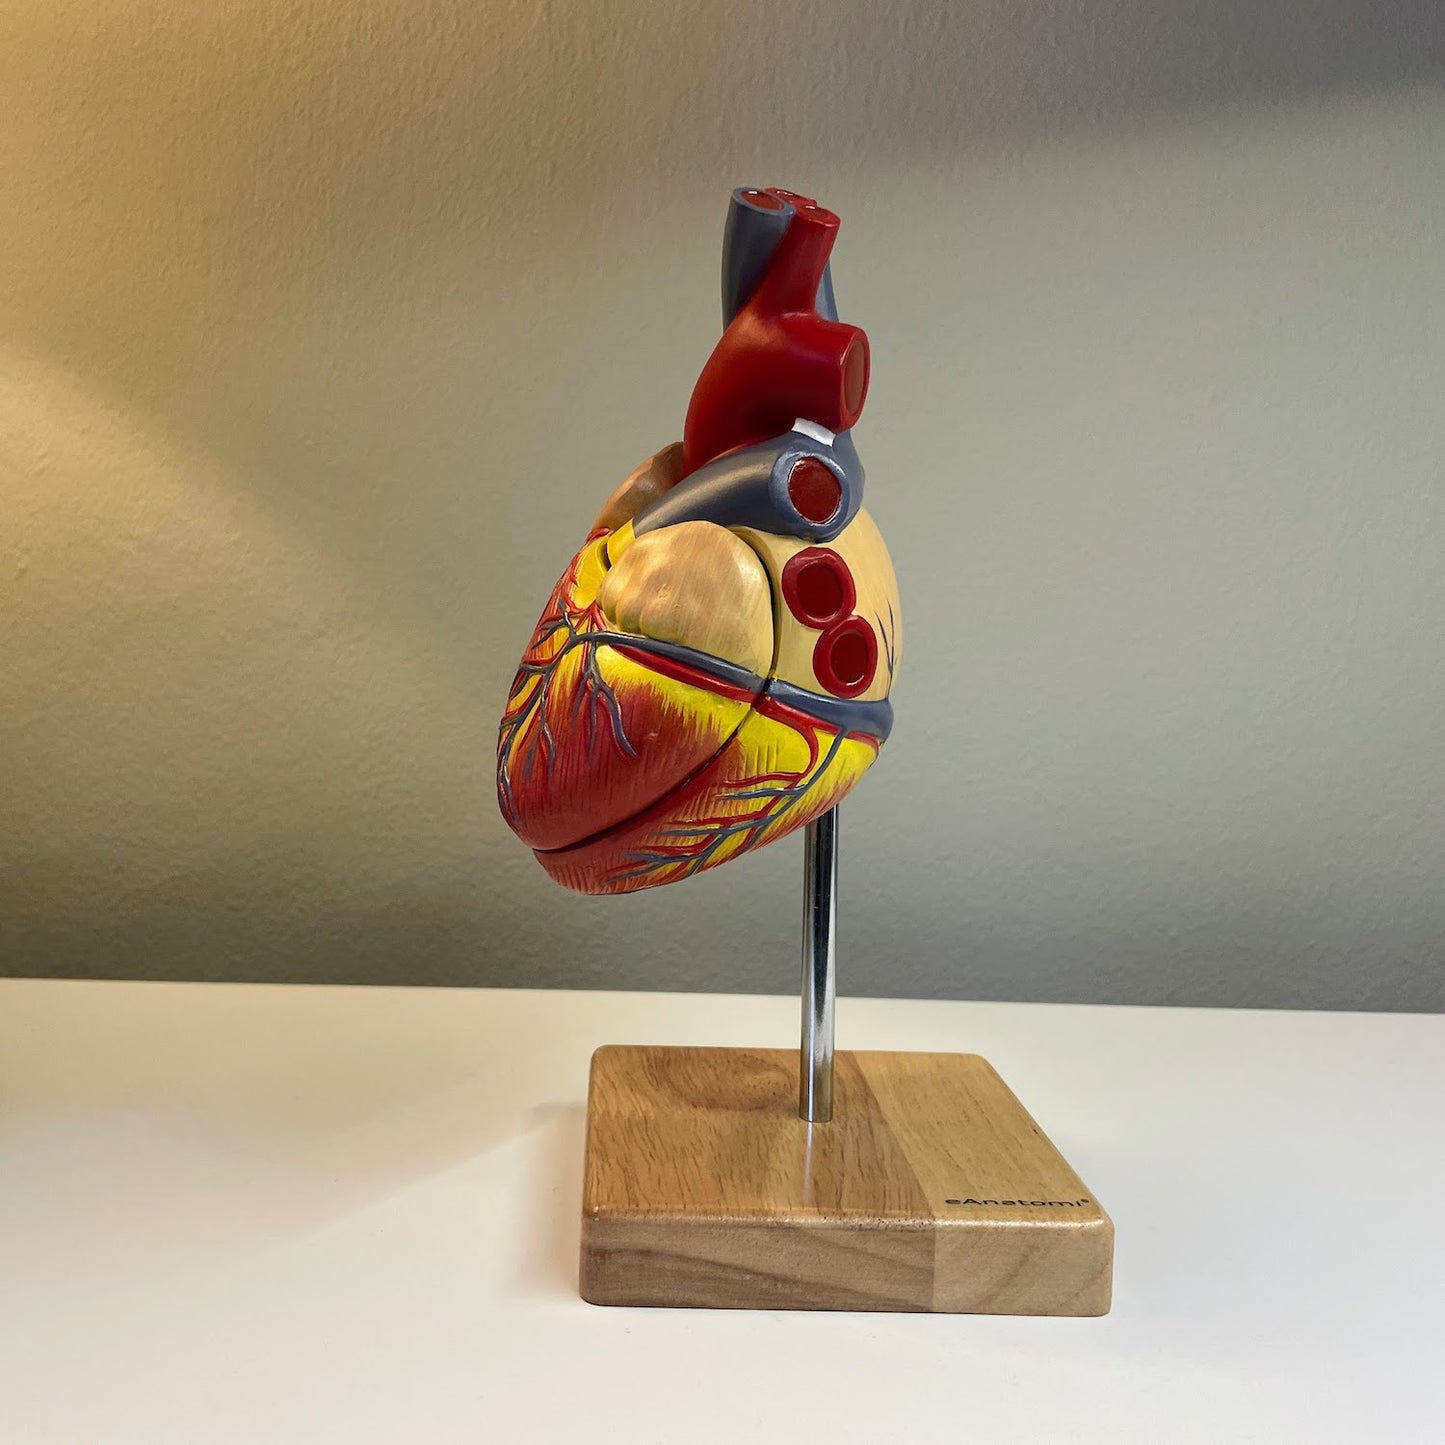 Klassisk hjertemodel i realistisk størrelse